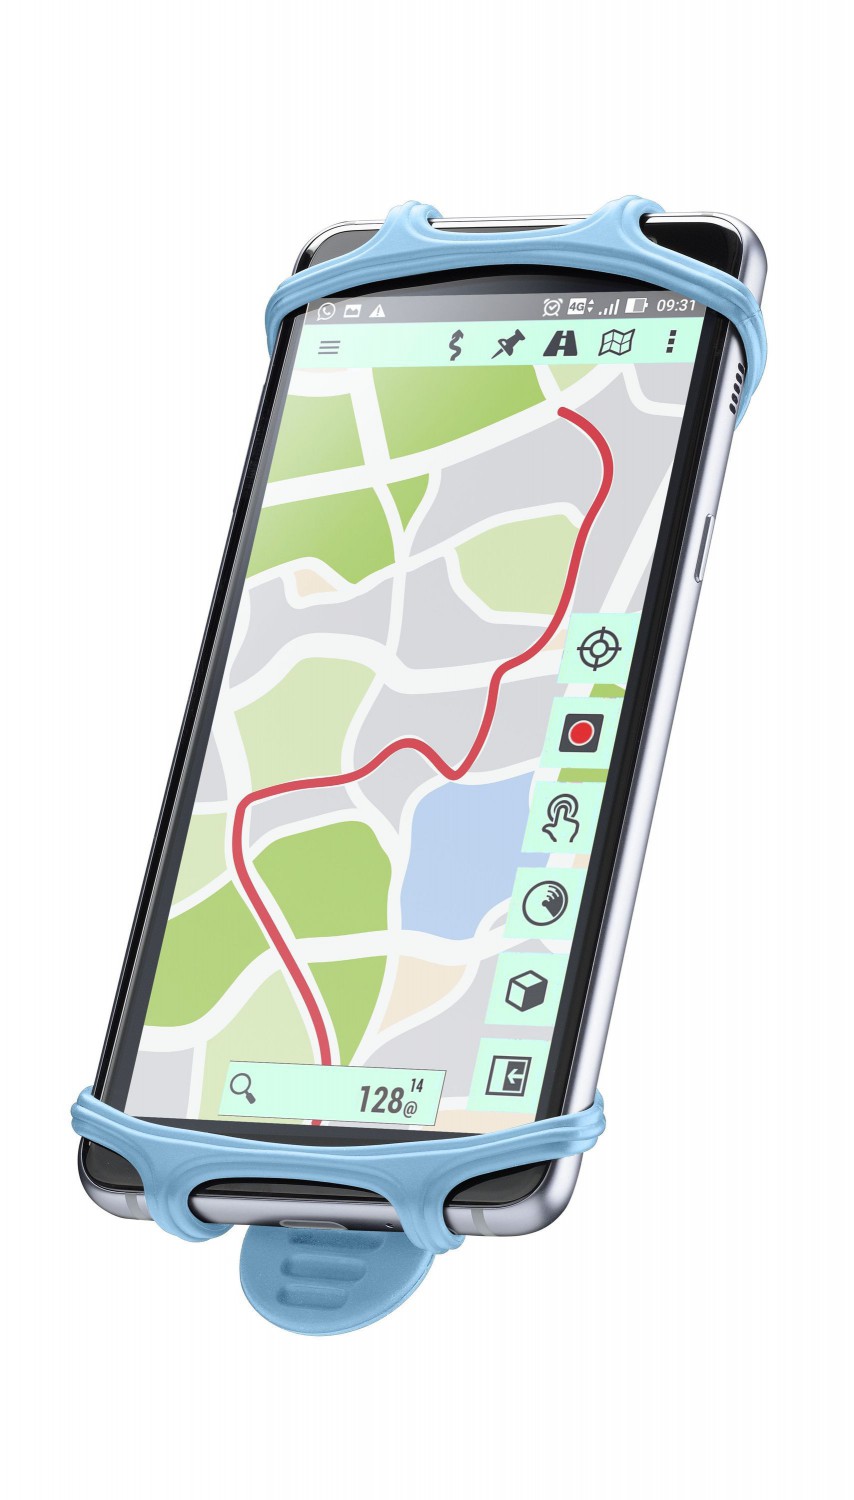 Silikonový držák Cellularline Bike Holder pro mobilní telefony na řídítka, modrý